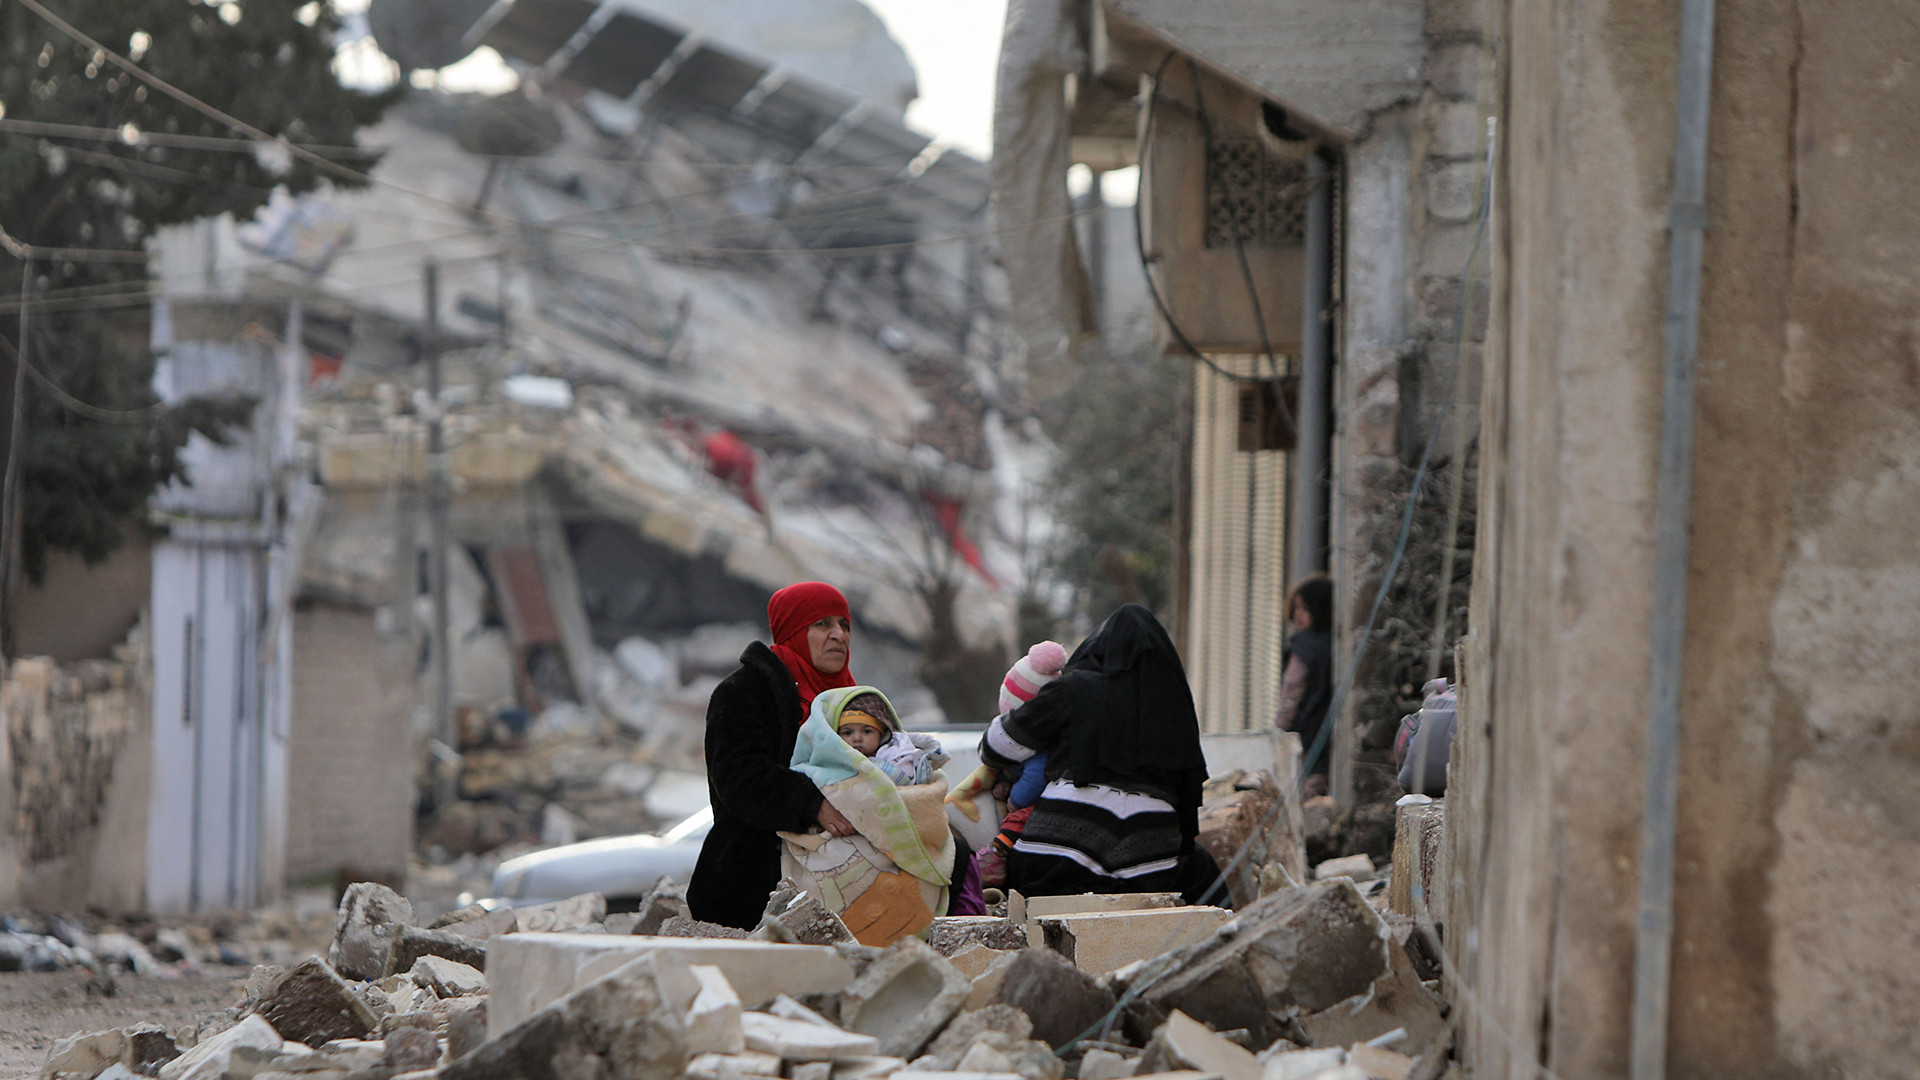 Syrische Frauen und Kinder sitzen in eingewickelt vor eingestürzten Gebäuden in der Stadt Jandairis im von Rebellen kontrollierten Teil der Provinz Aleppo (Syrien). | AFP